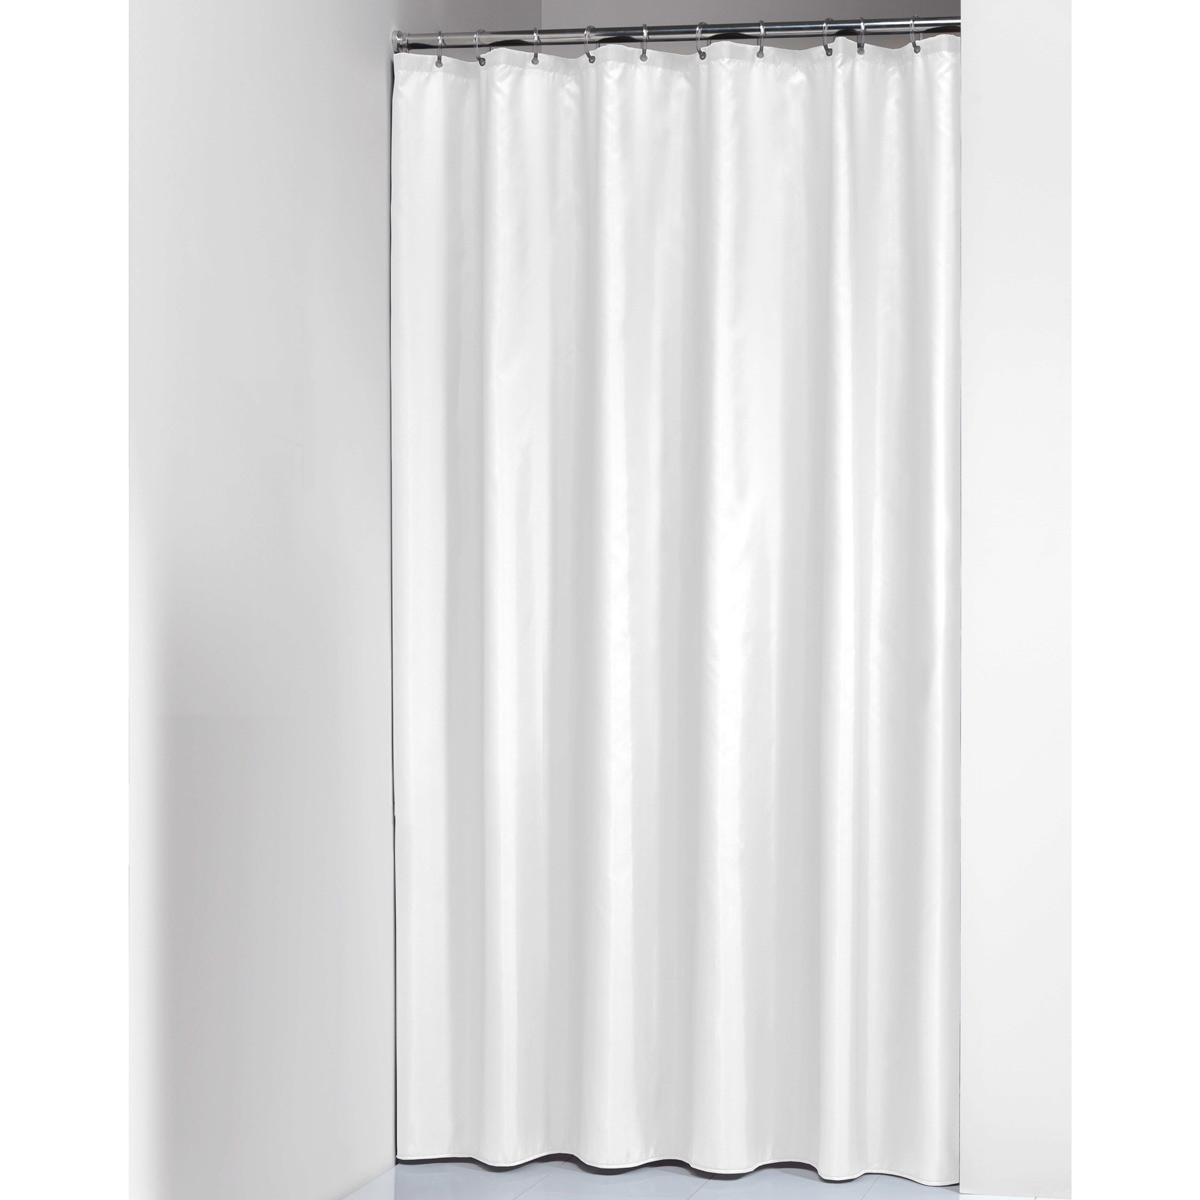 Κουρτίνα Μπάνιου Πλαστική (180x200) Με Κρίκους SealSkin Opaque White